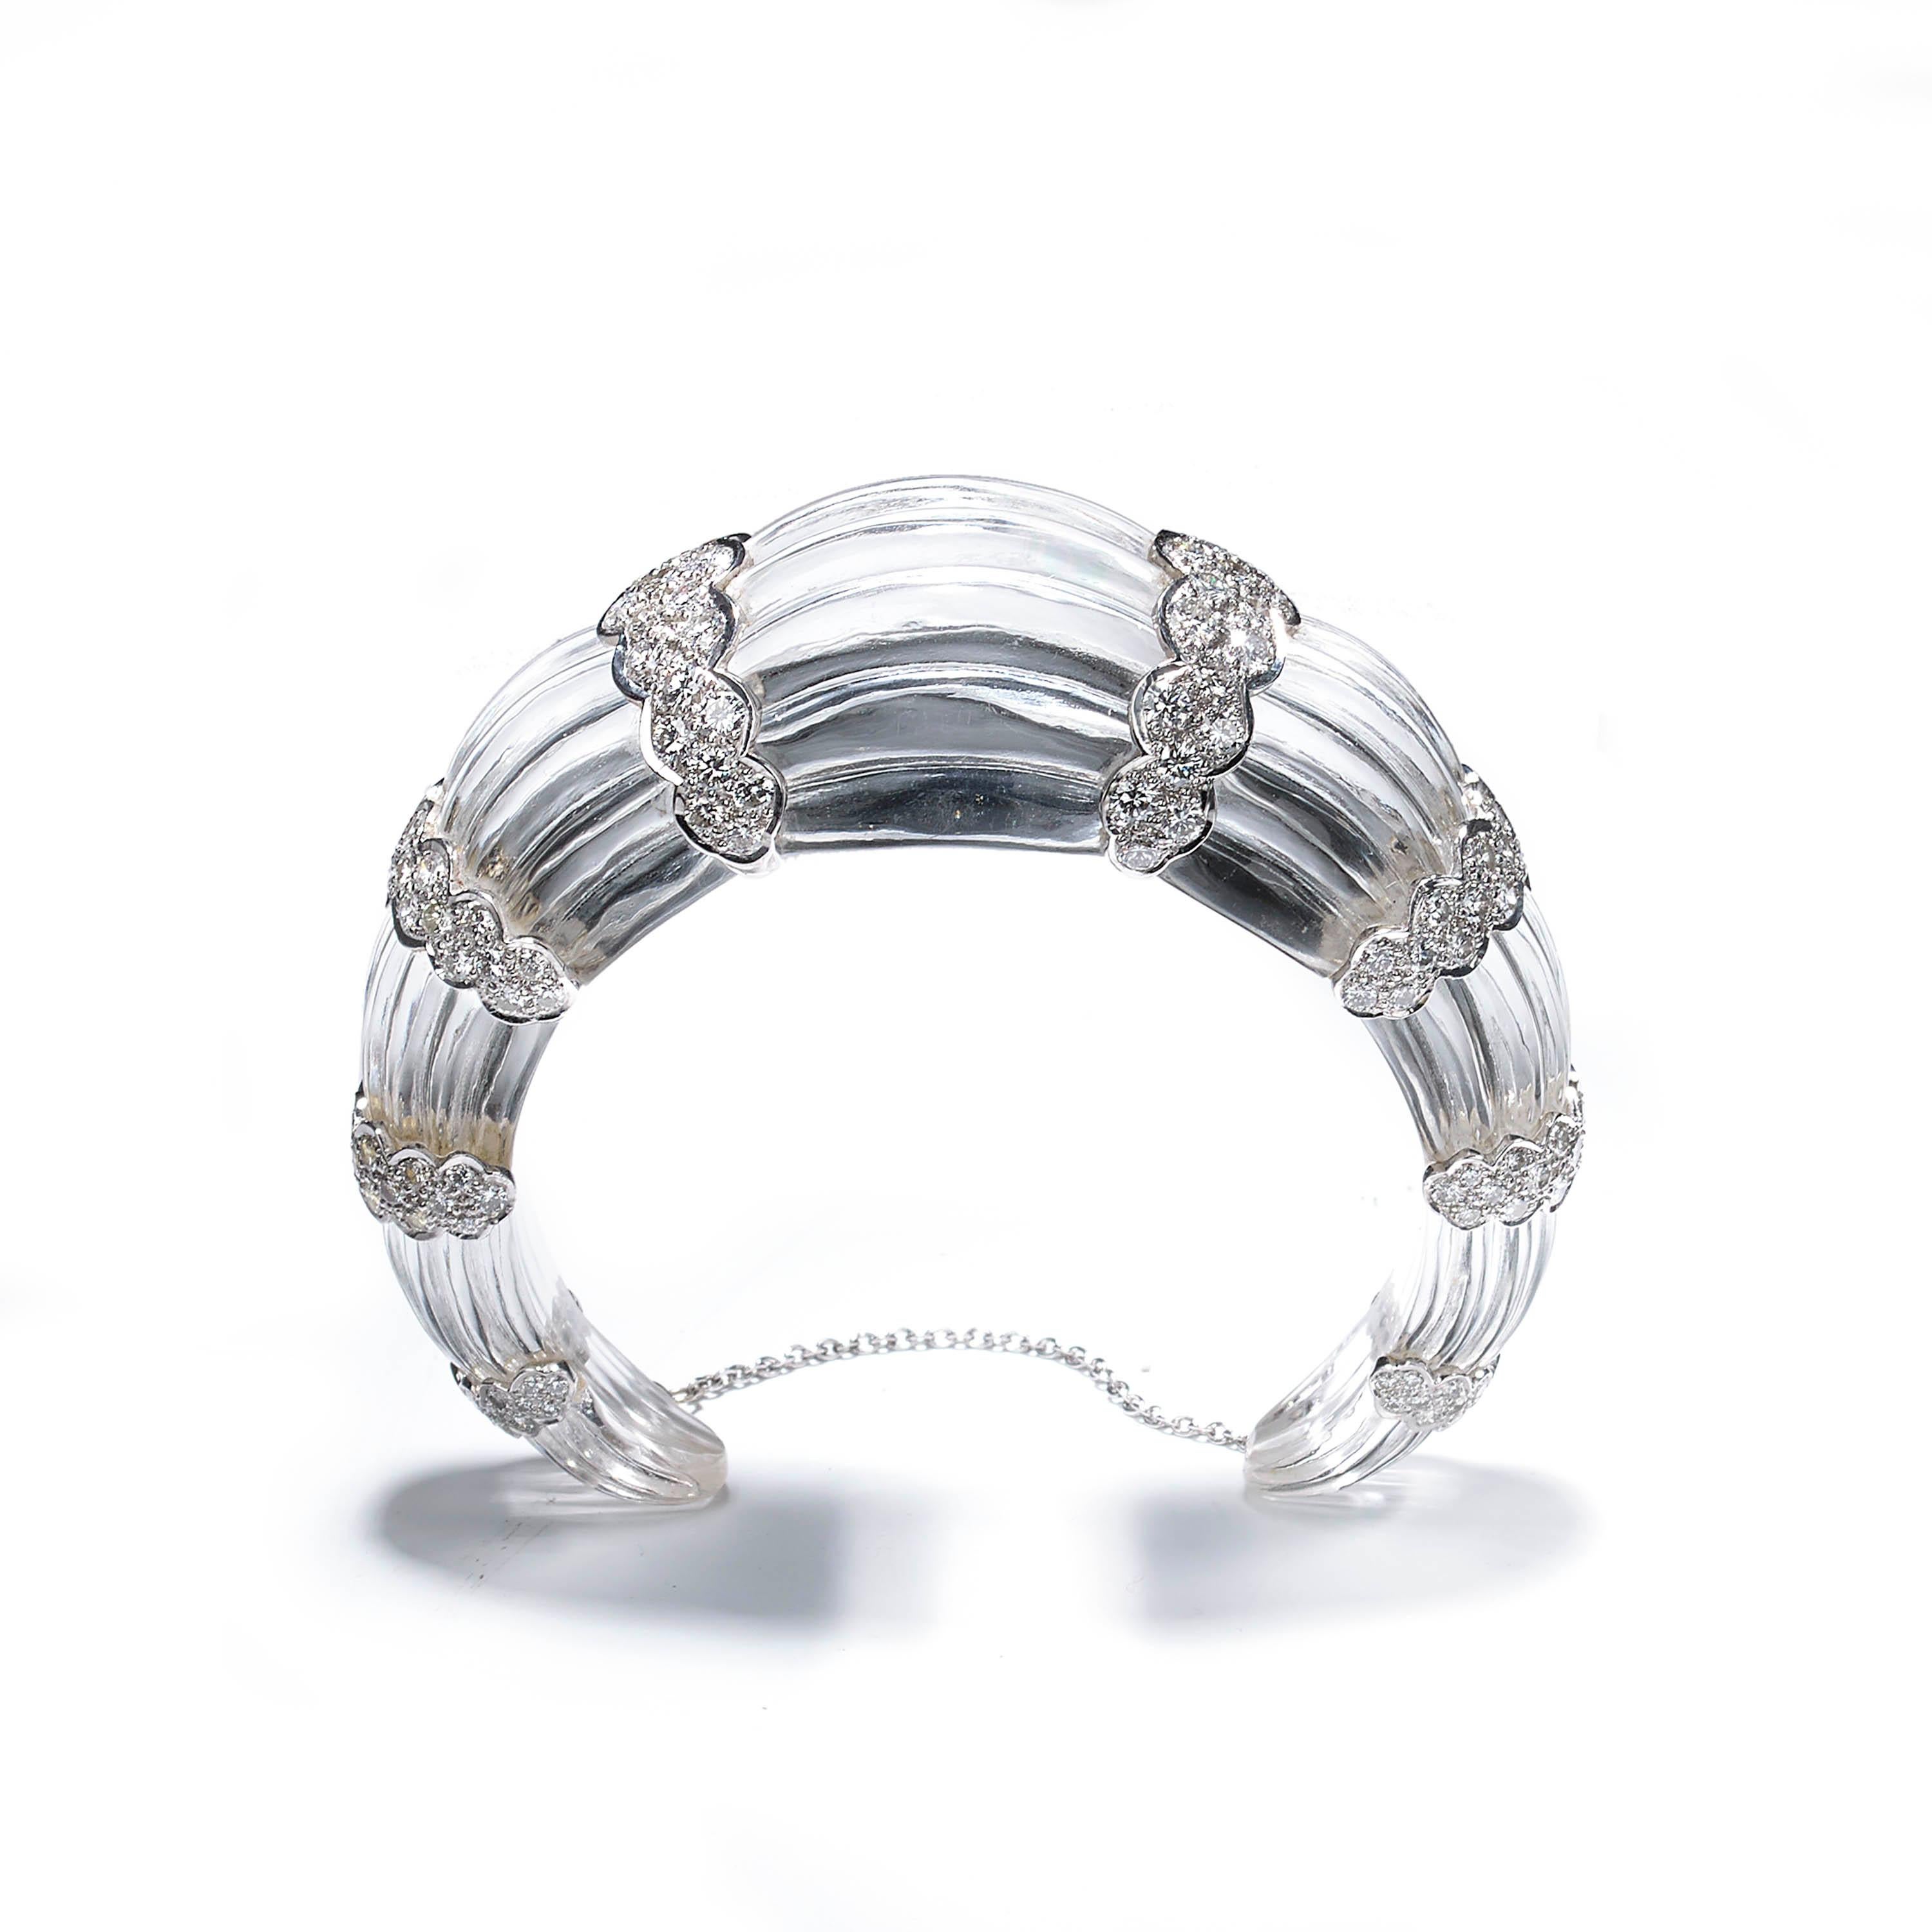 Bracelet moderne en cristal de roche cannelé, sculpté dans une seule pièce de cristal de roche, avec huit sections festonnées en or blanc 18ct, chacune sertie de diamants ronds de taille brillant, pesant un total estimé à 7,00 carats. Avec une